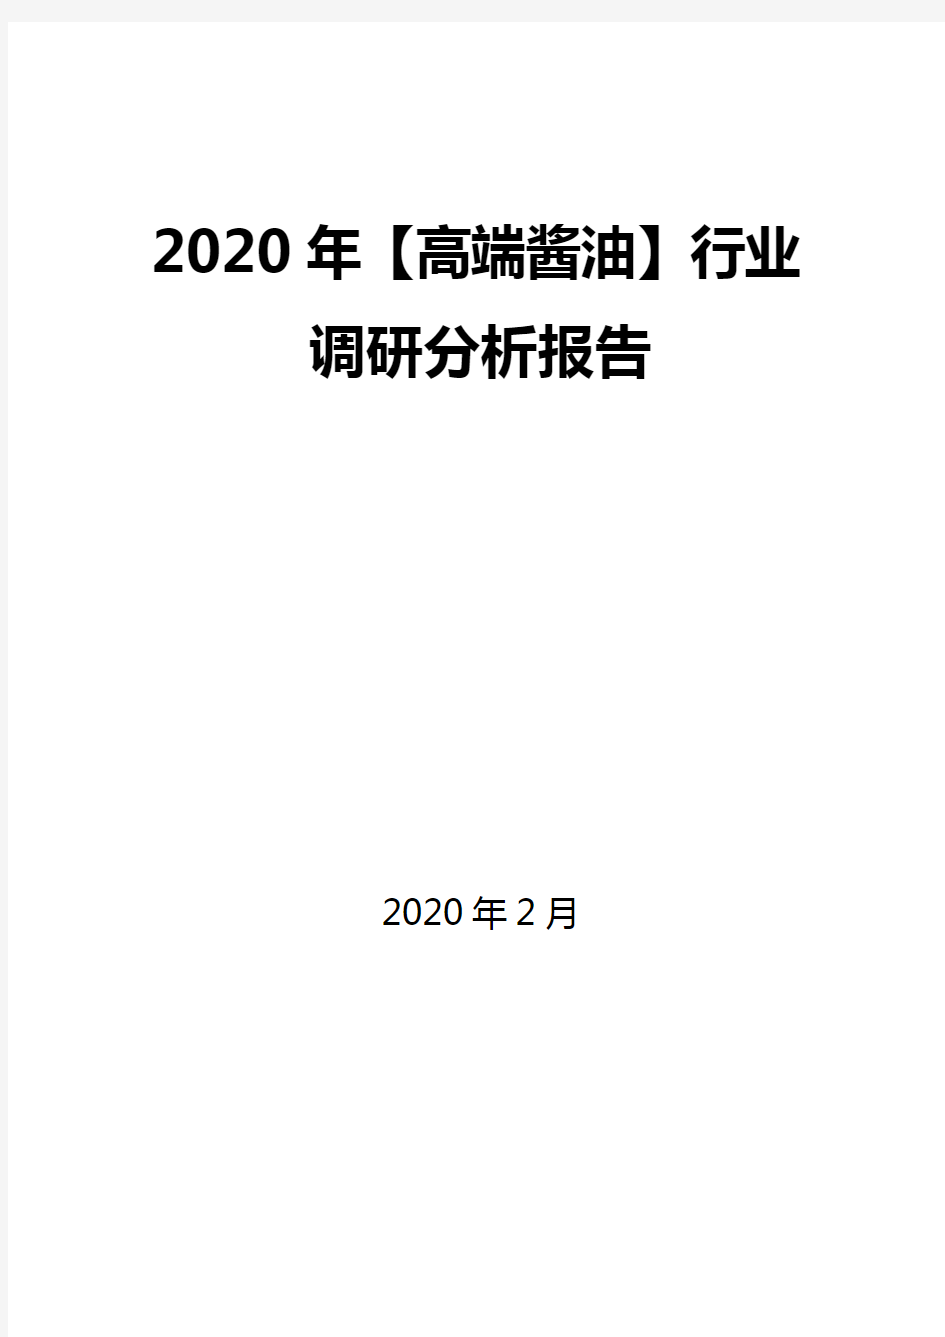 2020年【高端酱油】行业调研分析报告